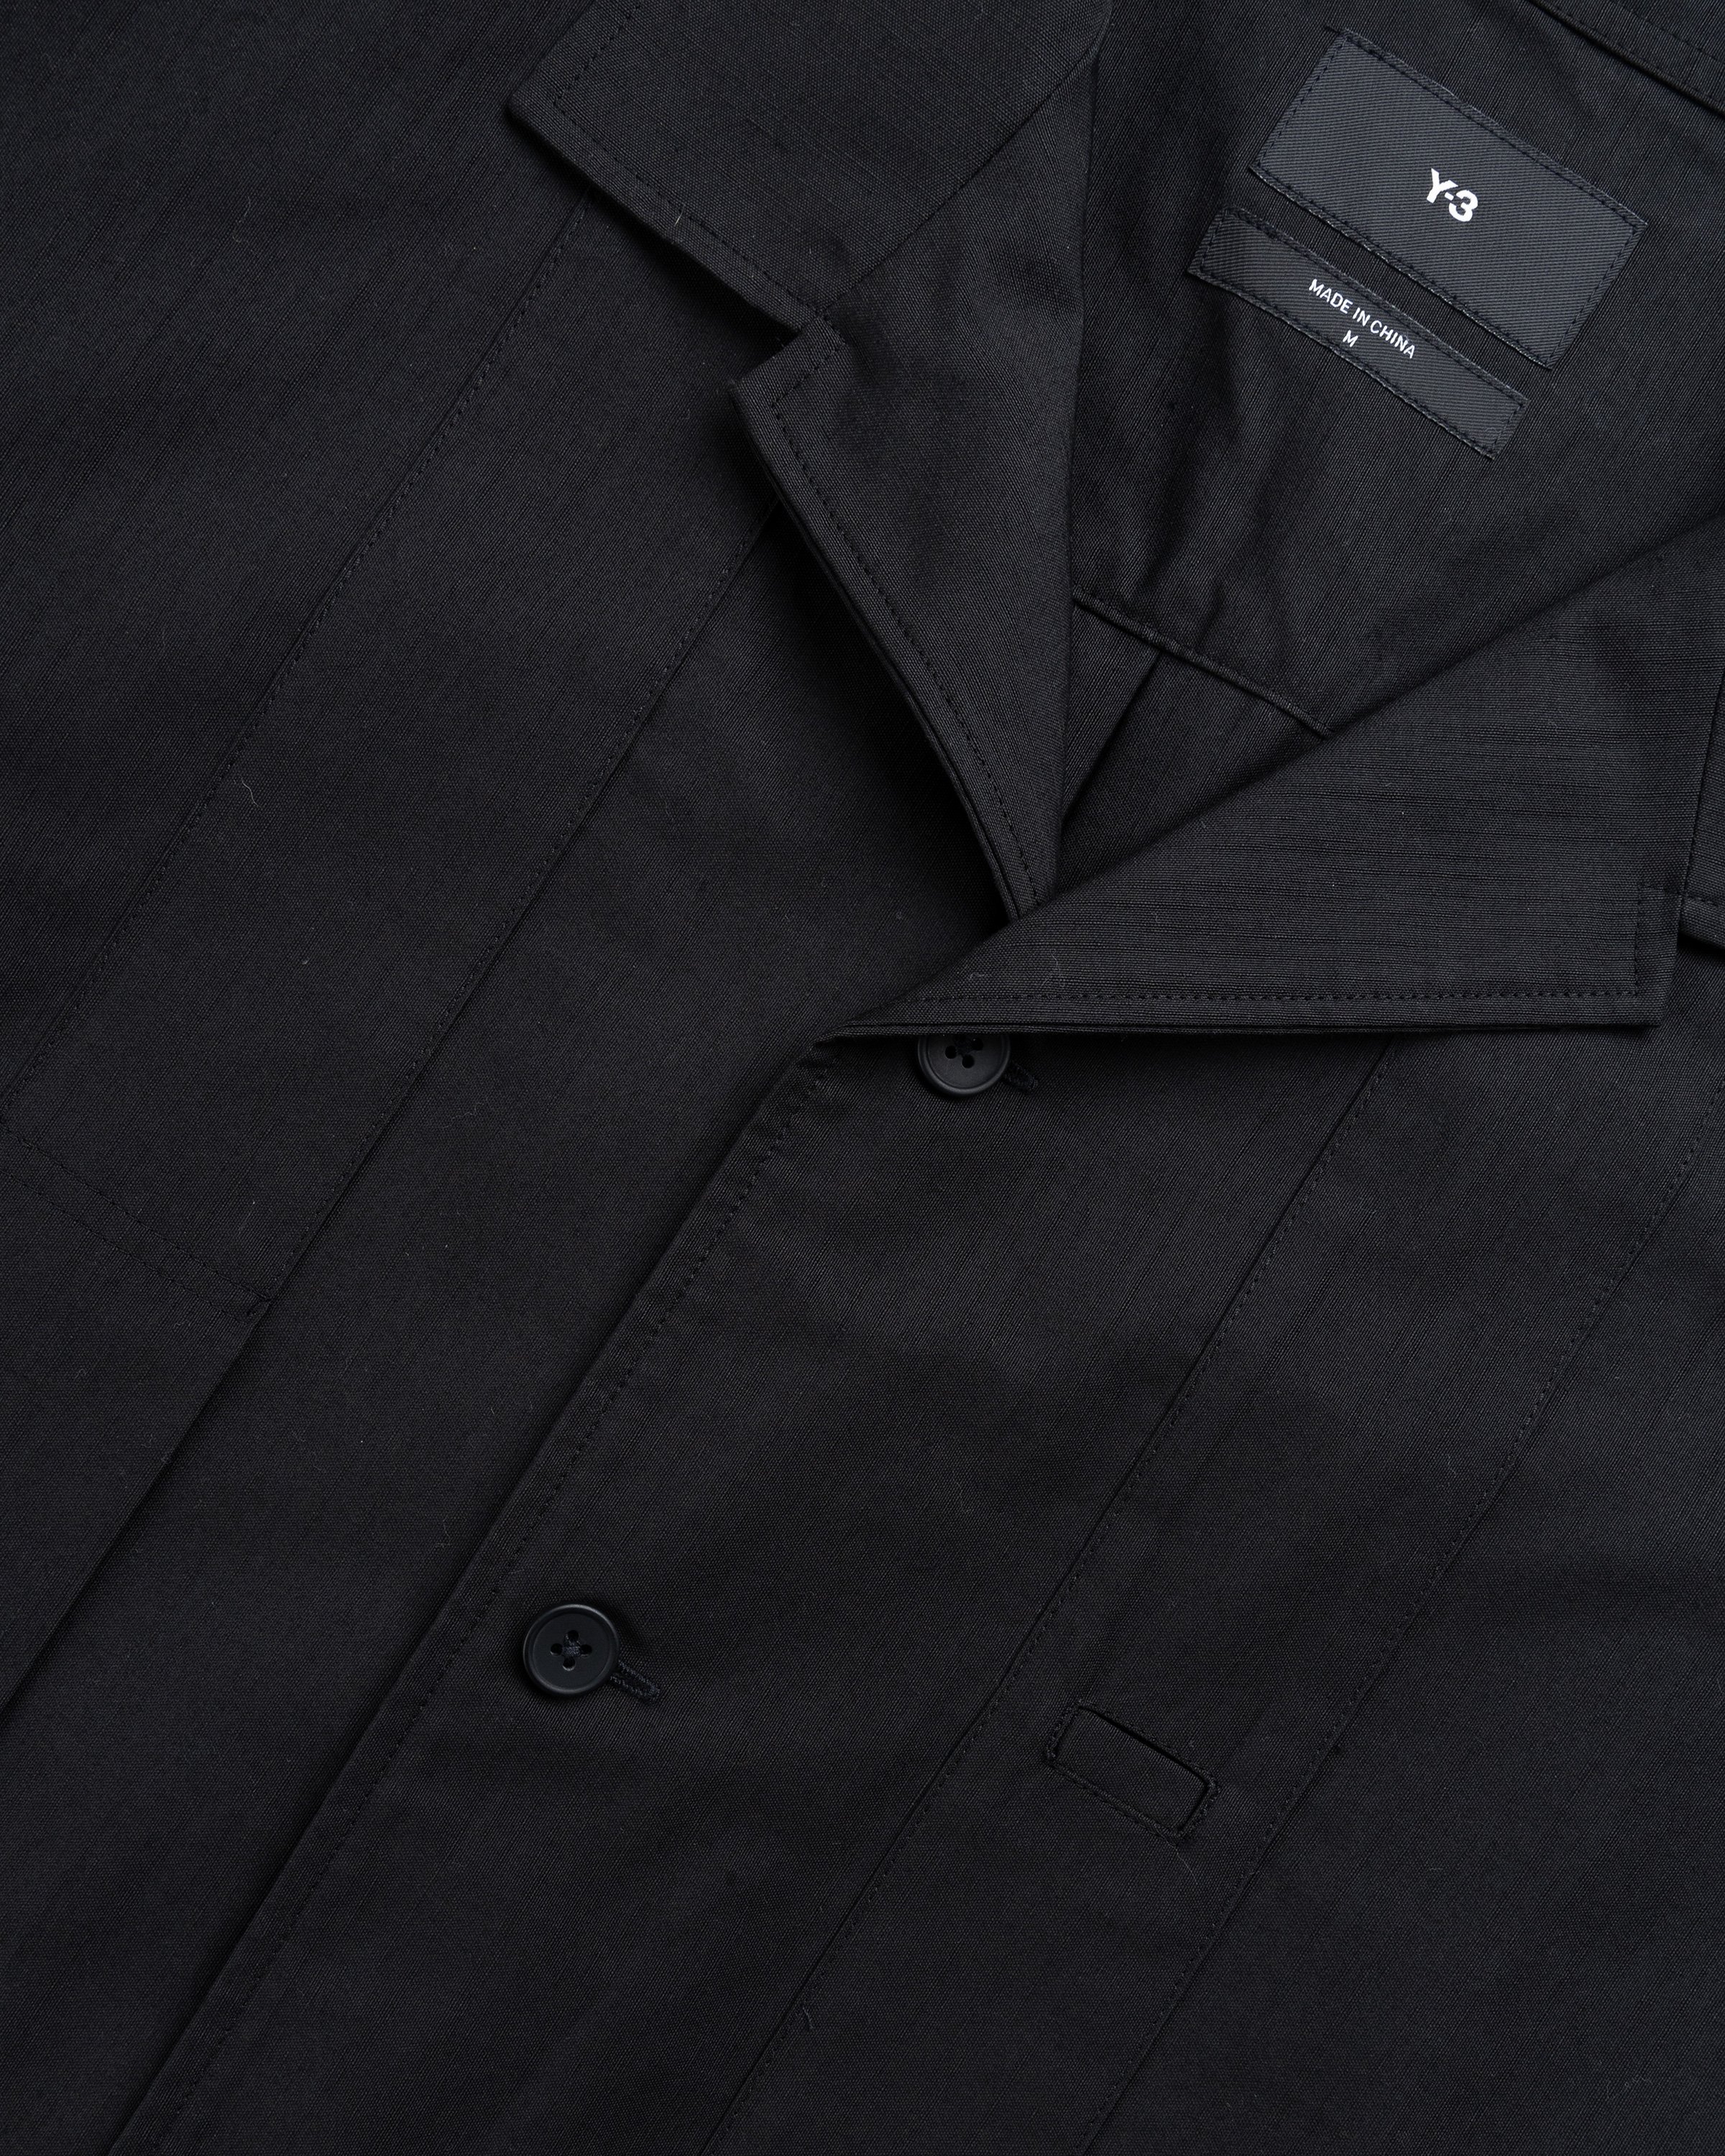 Y-3 - Longsleeve Workwear Shirt Black - Clothing - Black - Image 6